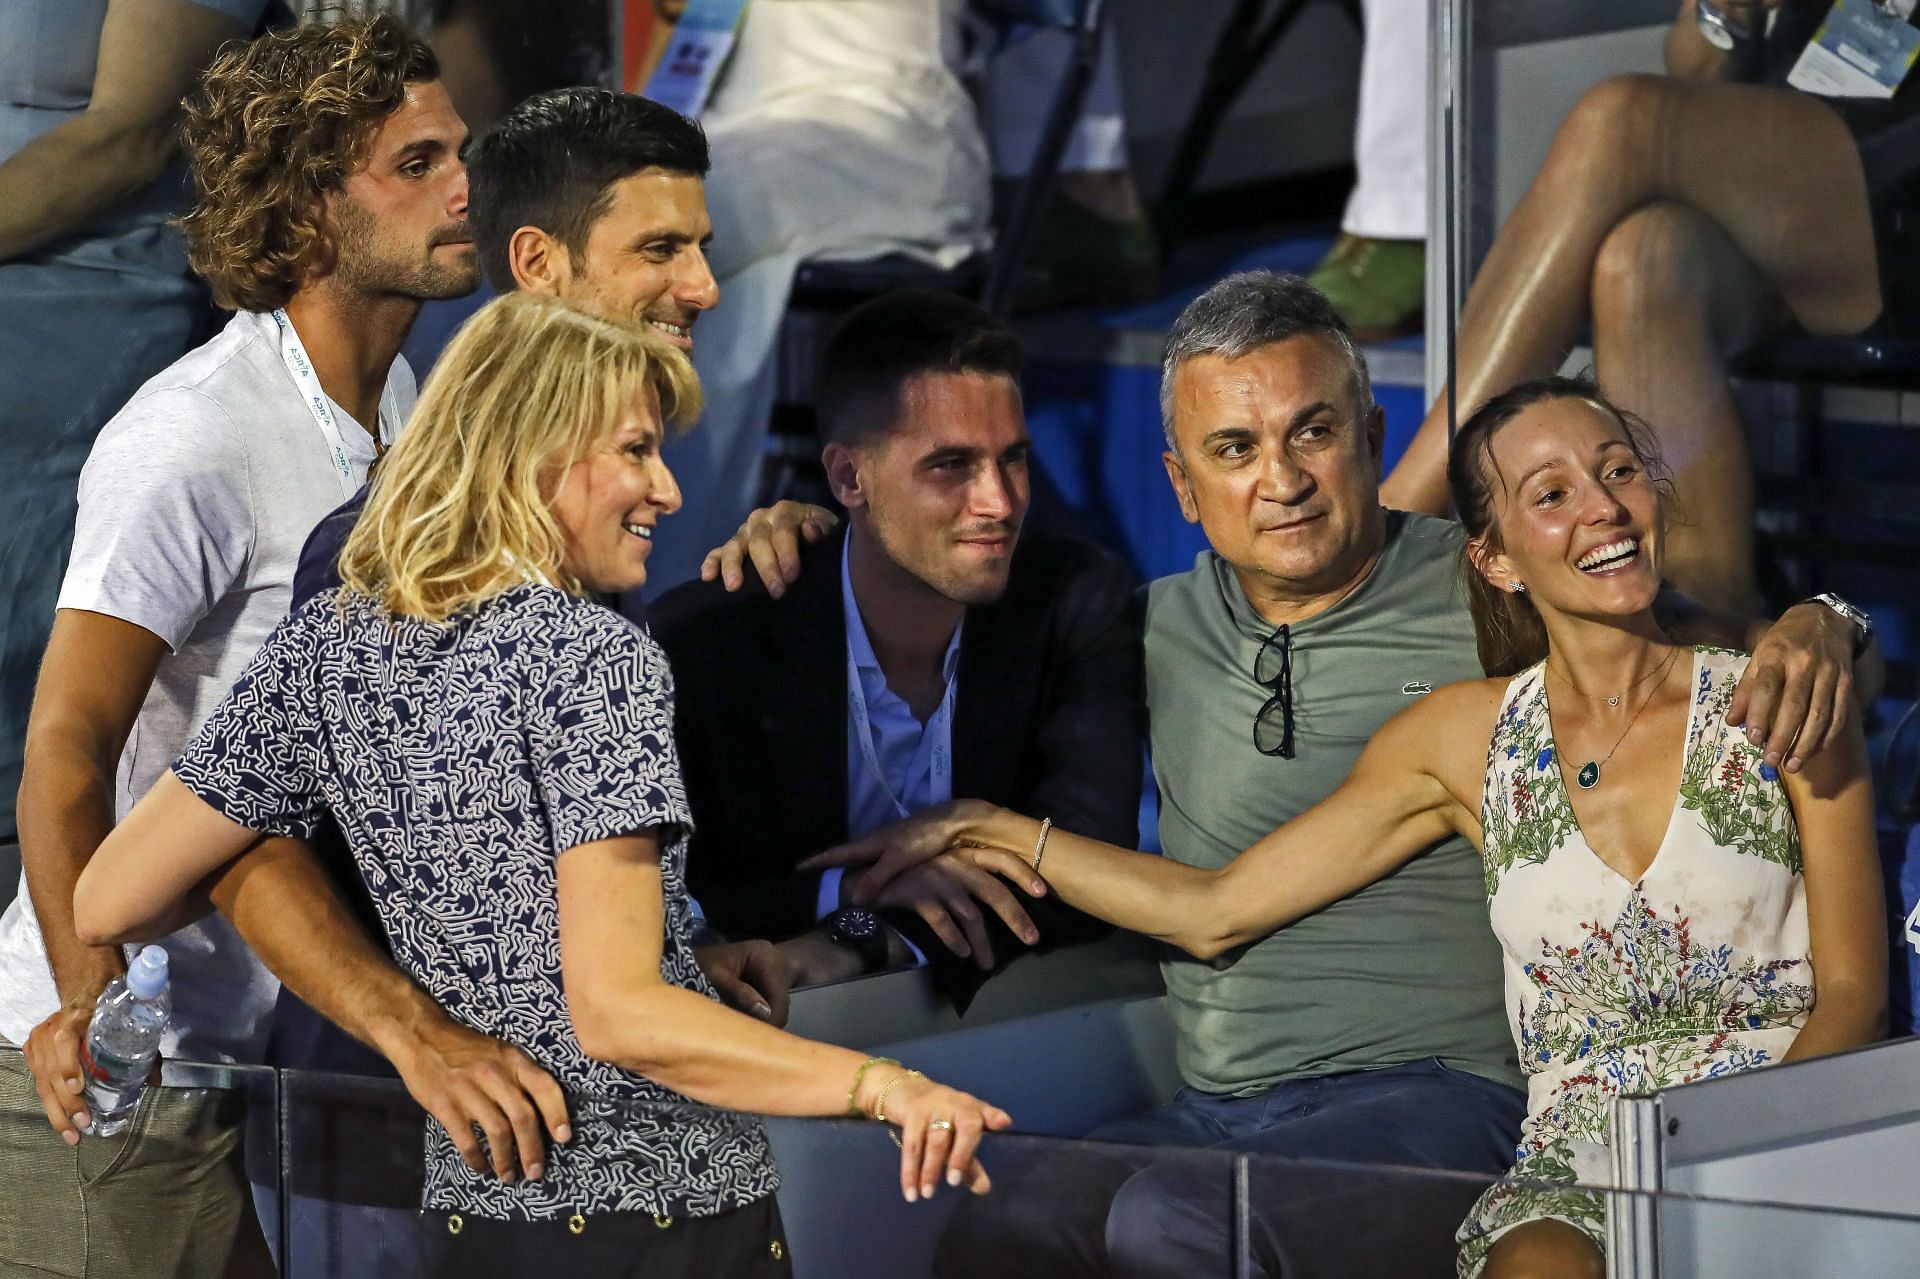 Novak Djokovic with his father, Srdjan Djokovic, wife Jelena Djokovic, and others